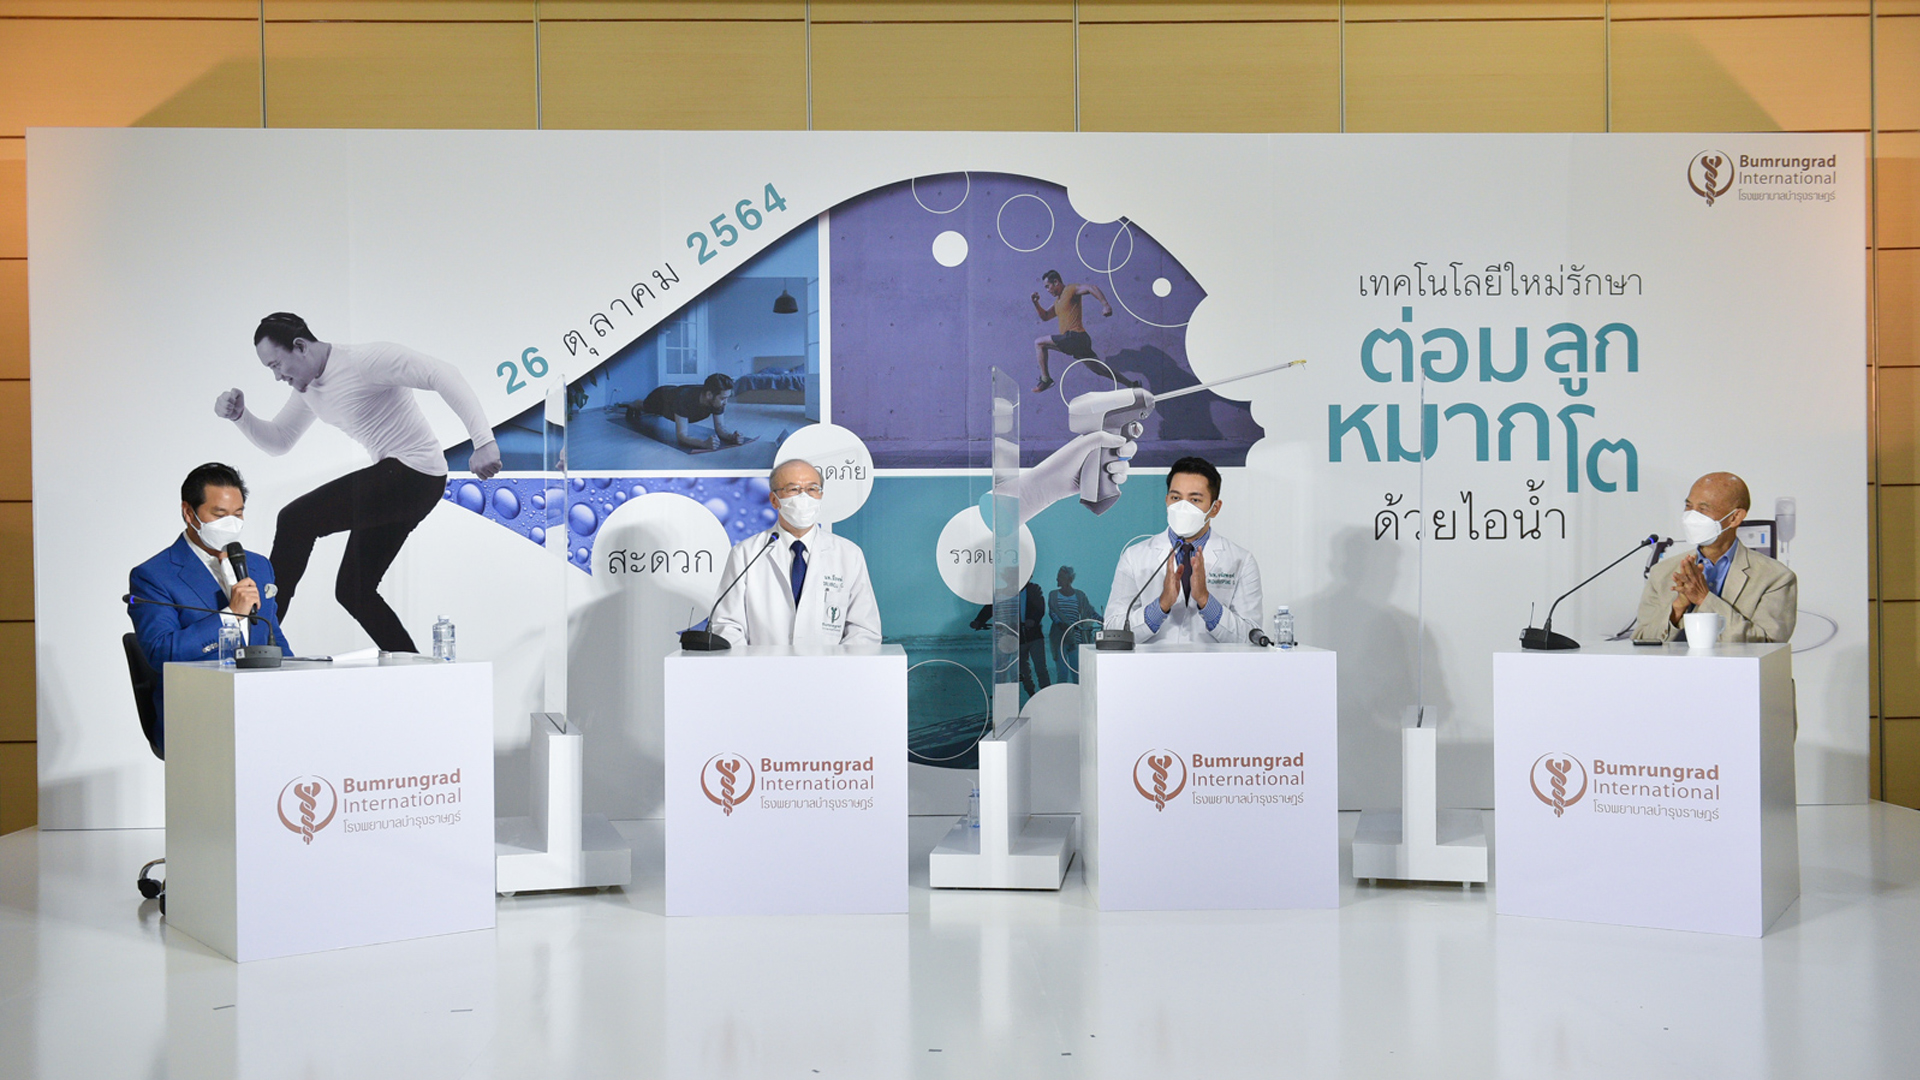 รพ.บำรุงราษฎร์ เปิดตัวเทคโนโลยีใหม่ในการรักษาโรคต่อมลูกหมากโตด้วยไอน้ำ แห่งแรกในไทย